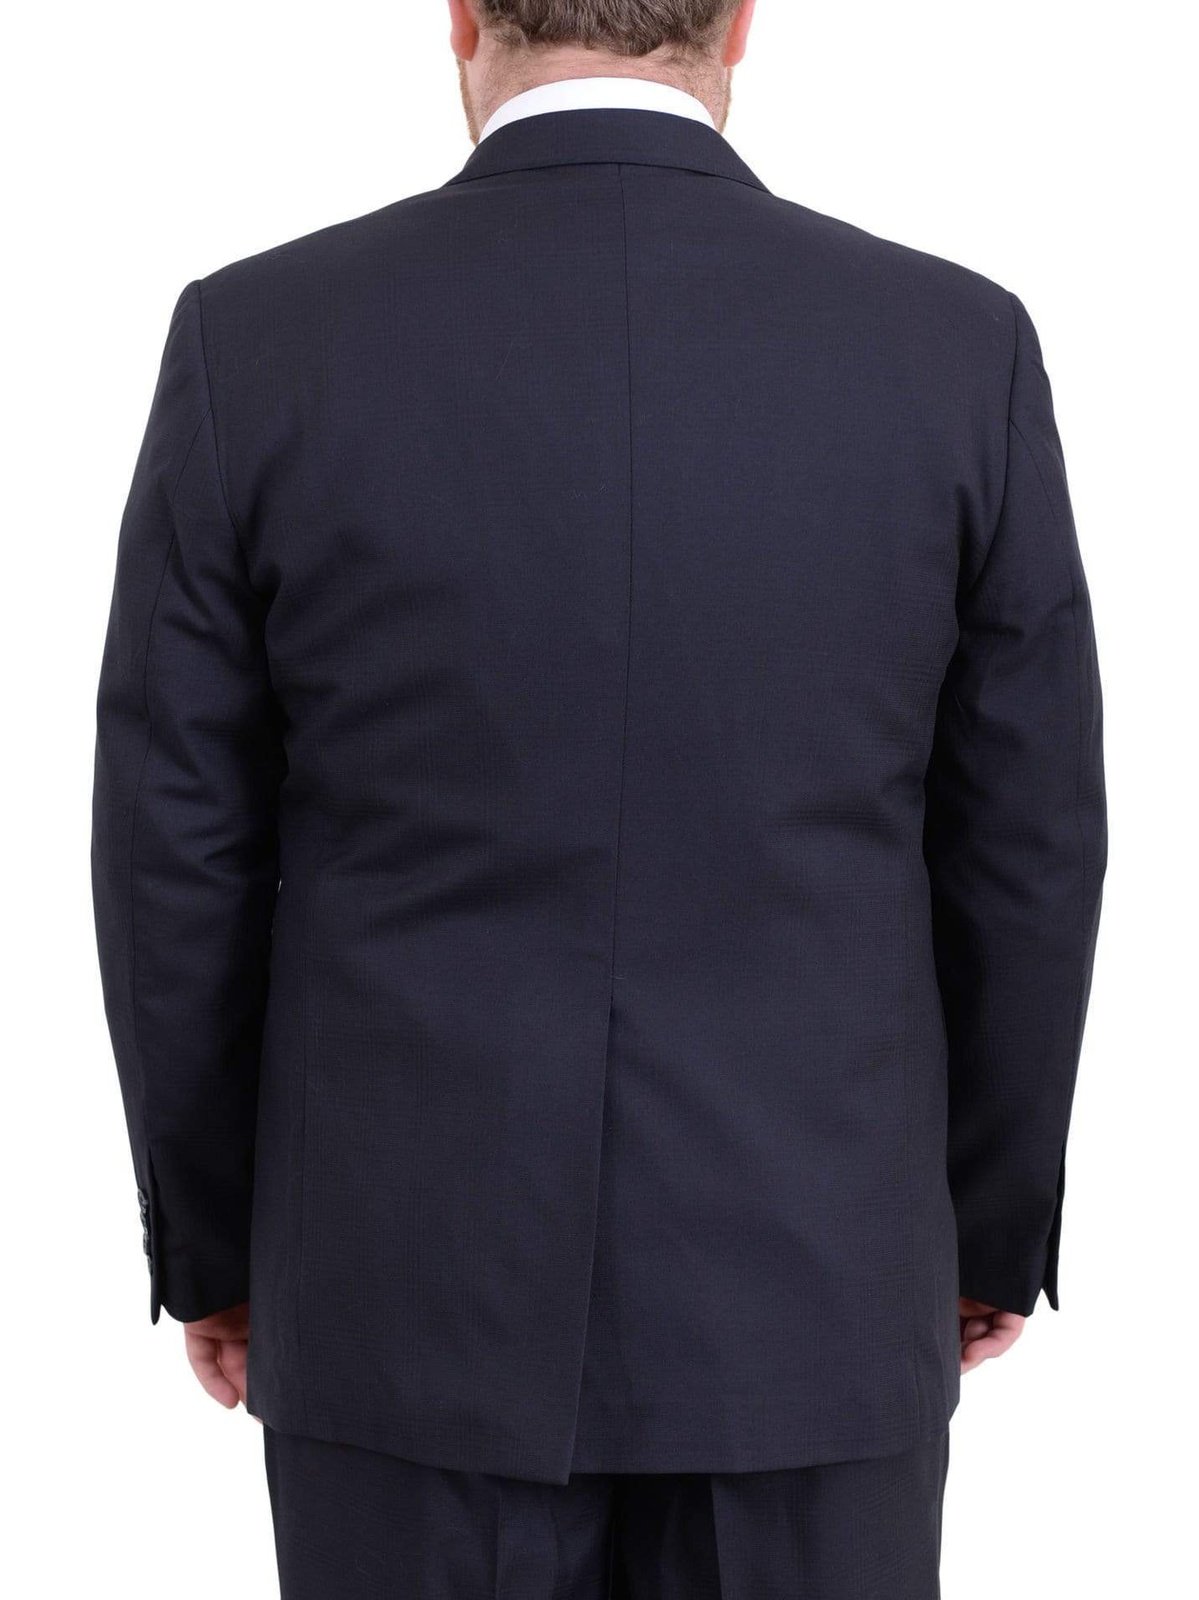 Arthur Black Sale Suits Men&#39;s Arthur Black Executive Portly Fit Navy Blue Plaid Two Button Wool Suit